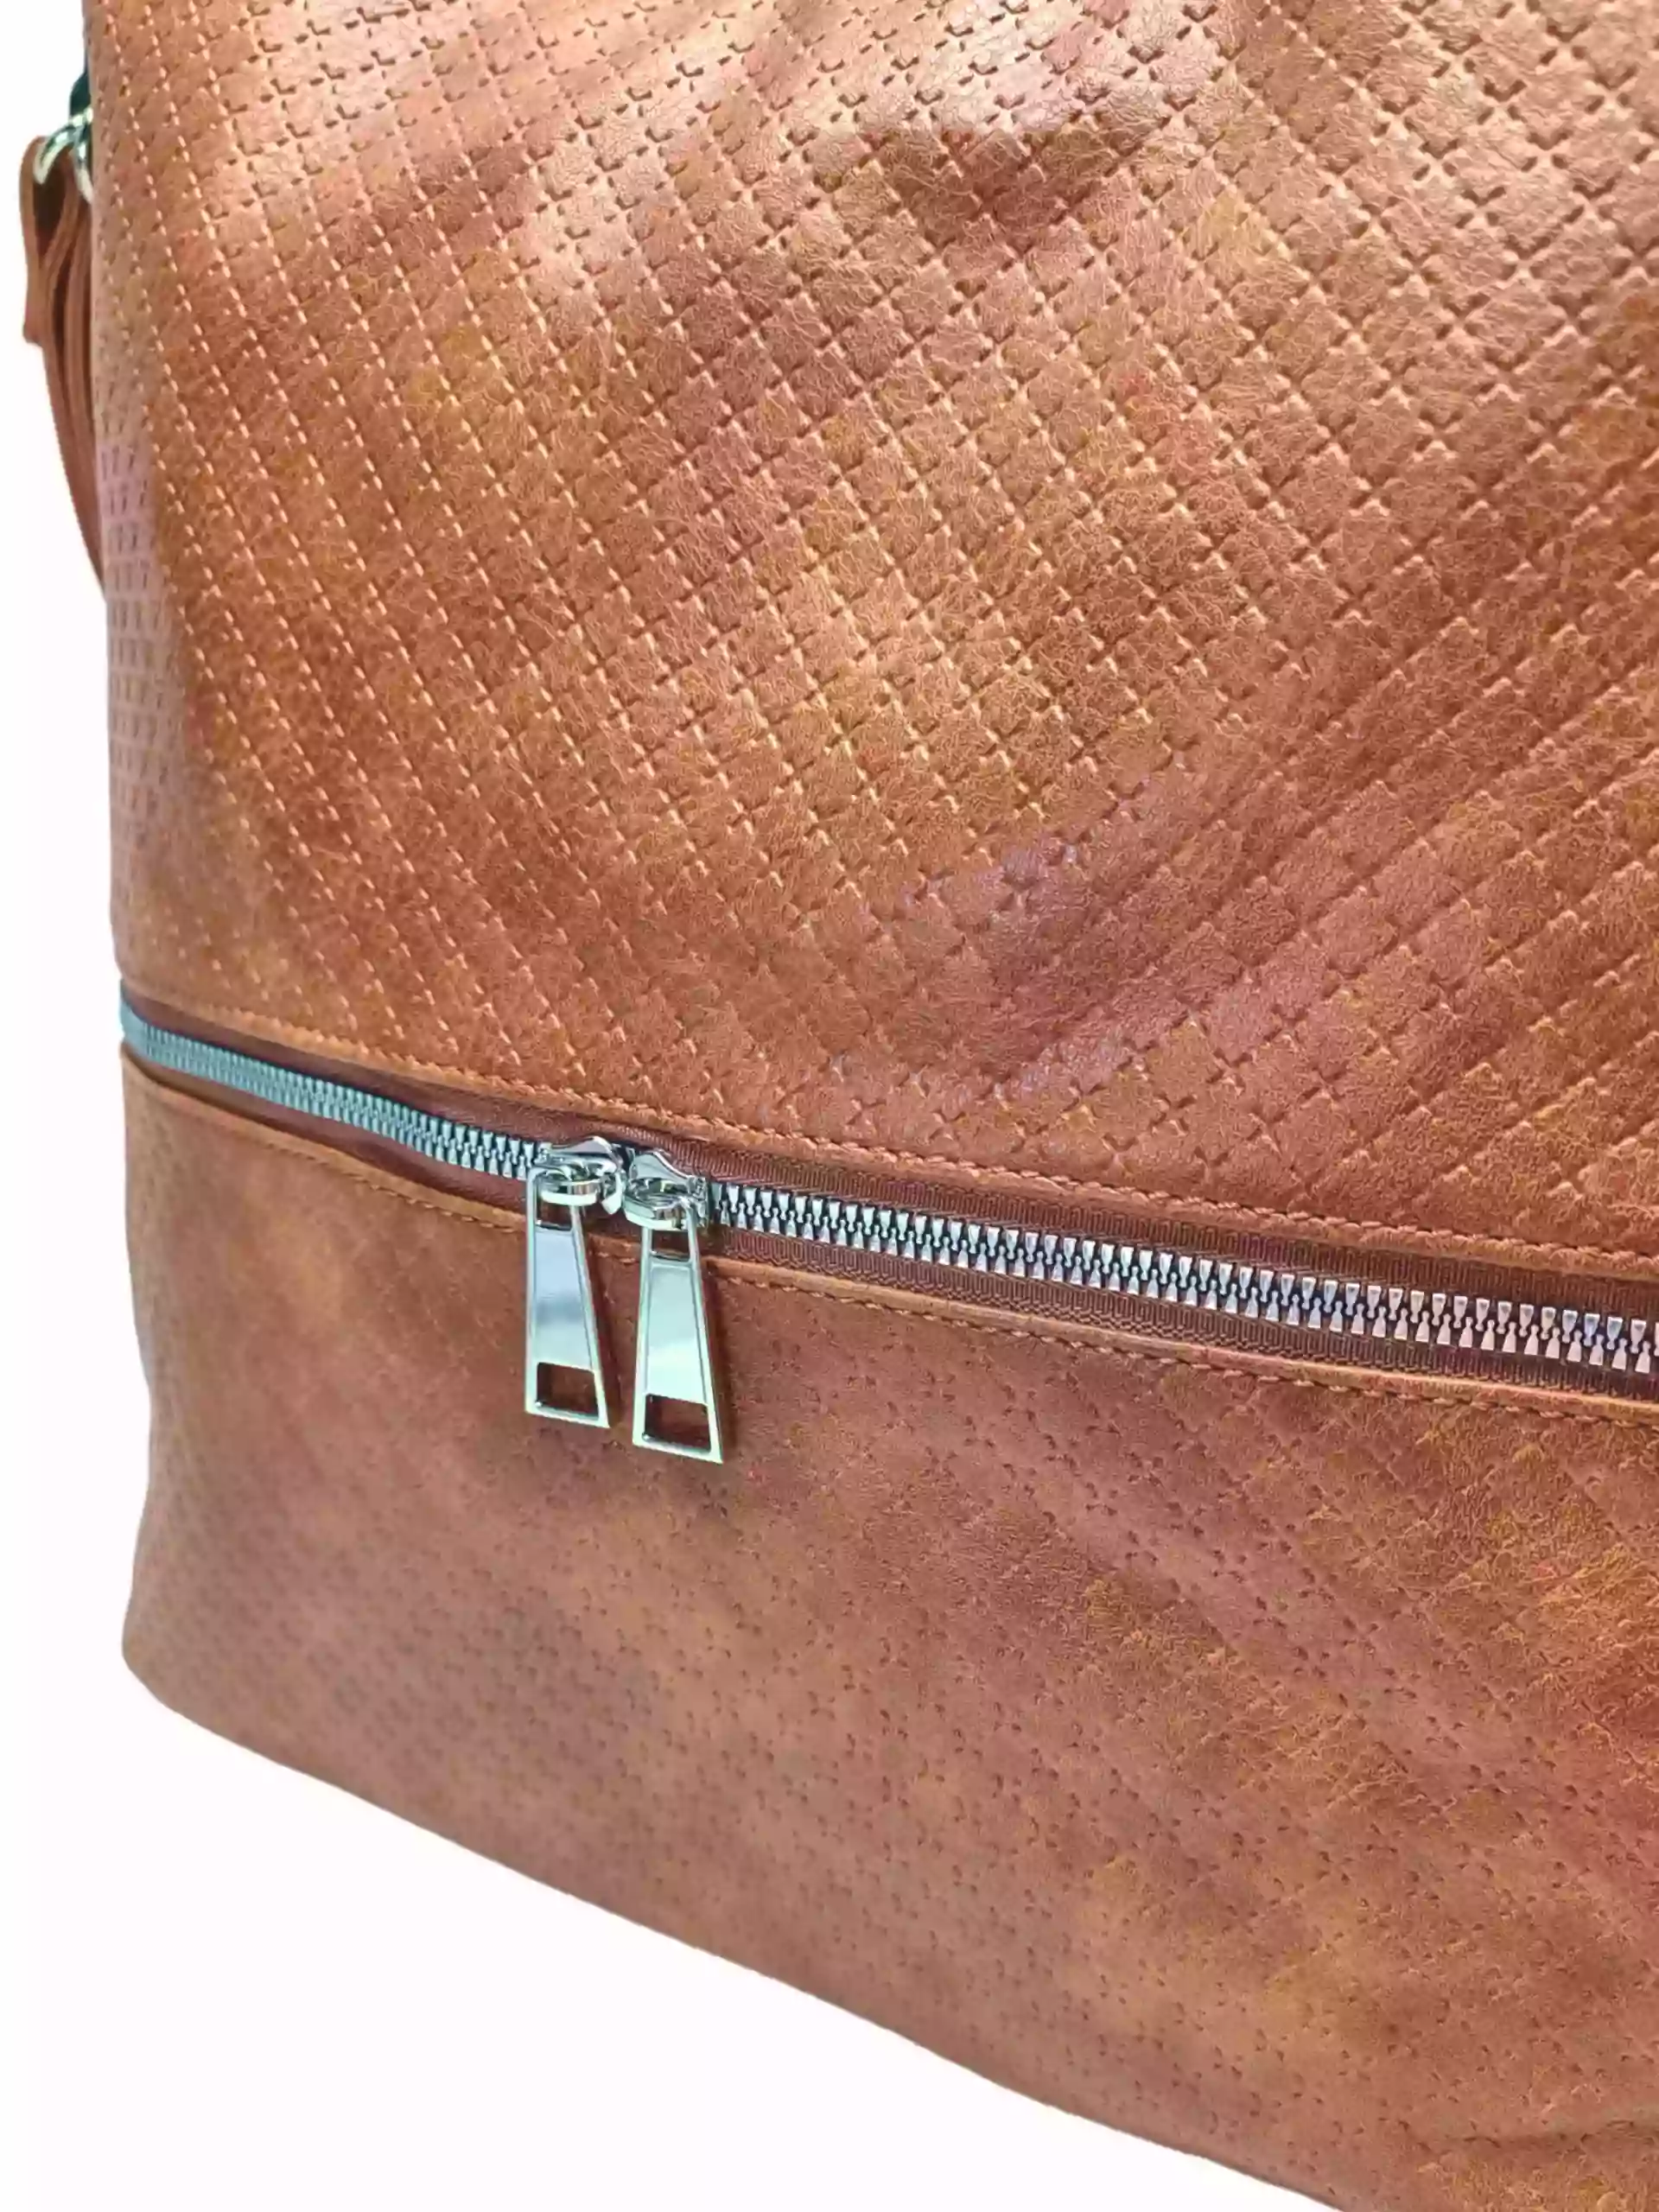 Velký středně hnědý kabelko-batoh 2v1 s praktickou kapsou, Tapple, H190010N, detail kabelko-batohu 2v1